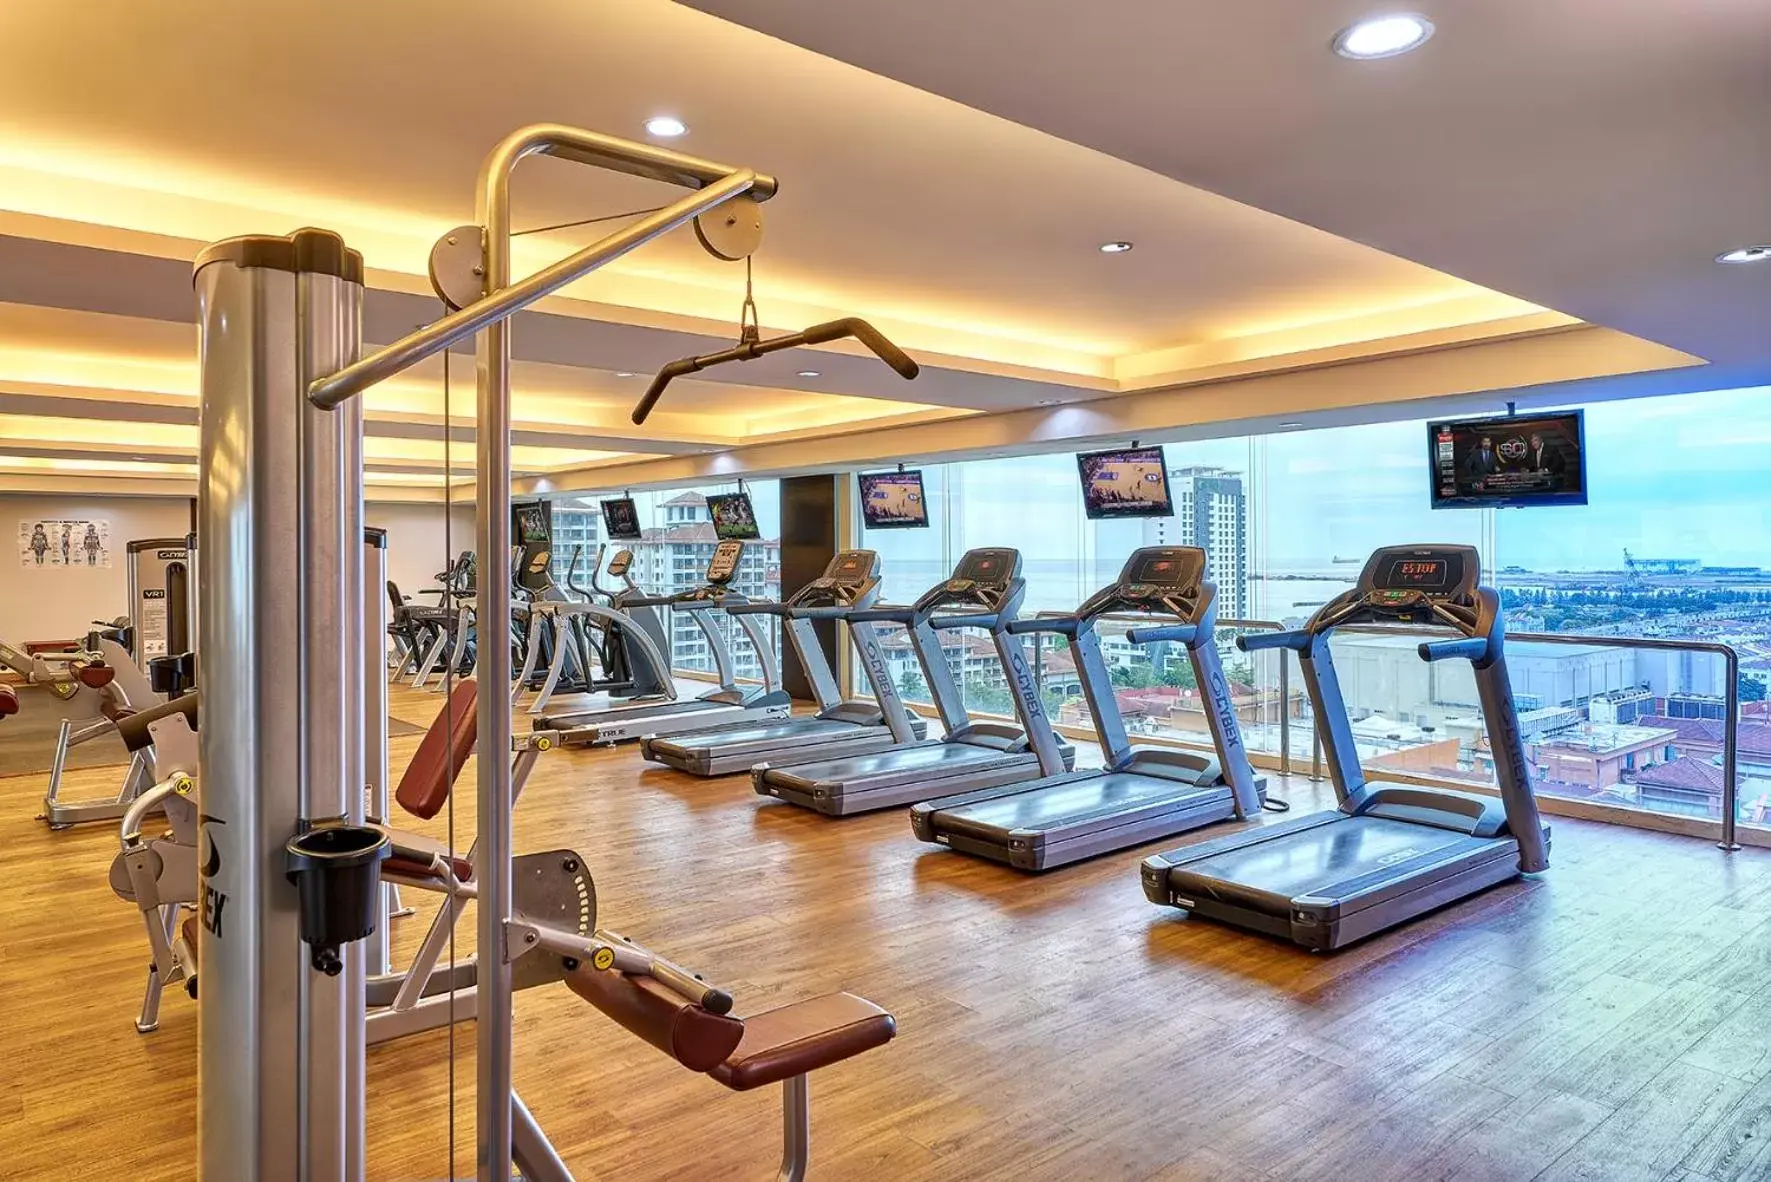 Fitness centre/facilities, Fitness Center/Facilities in Hatten Hotel Melaka